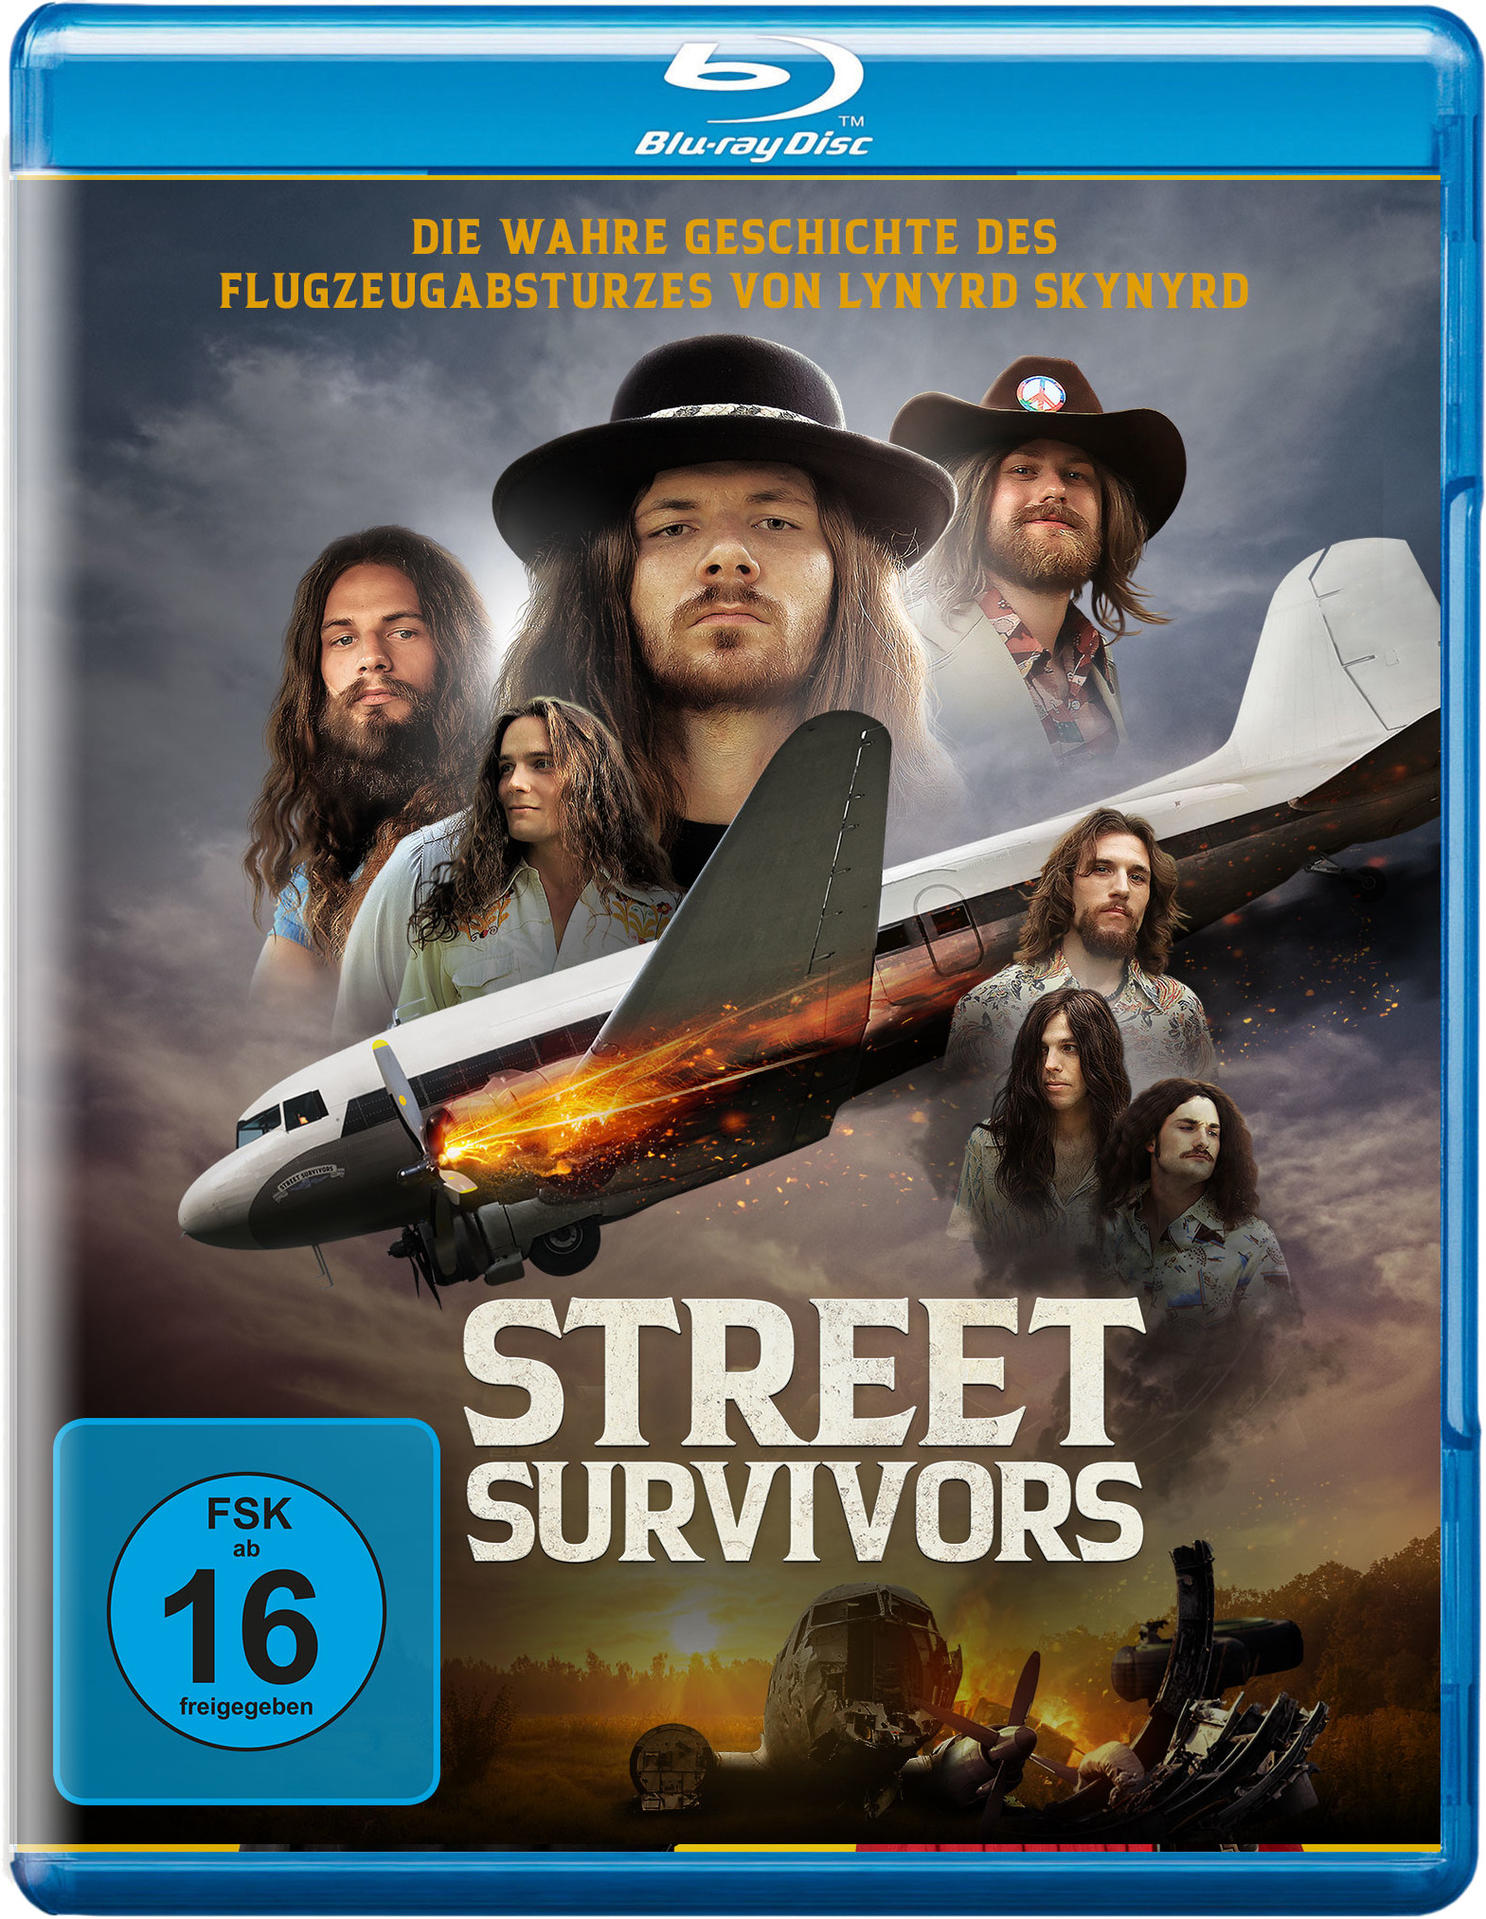 Street Survivors von - Lynyrd Skynyrd wahre Flugzeugabsturzes Geschichte des Die Blu-ray